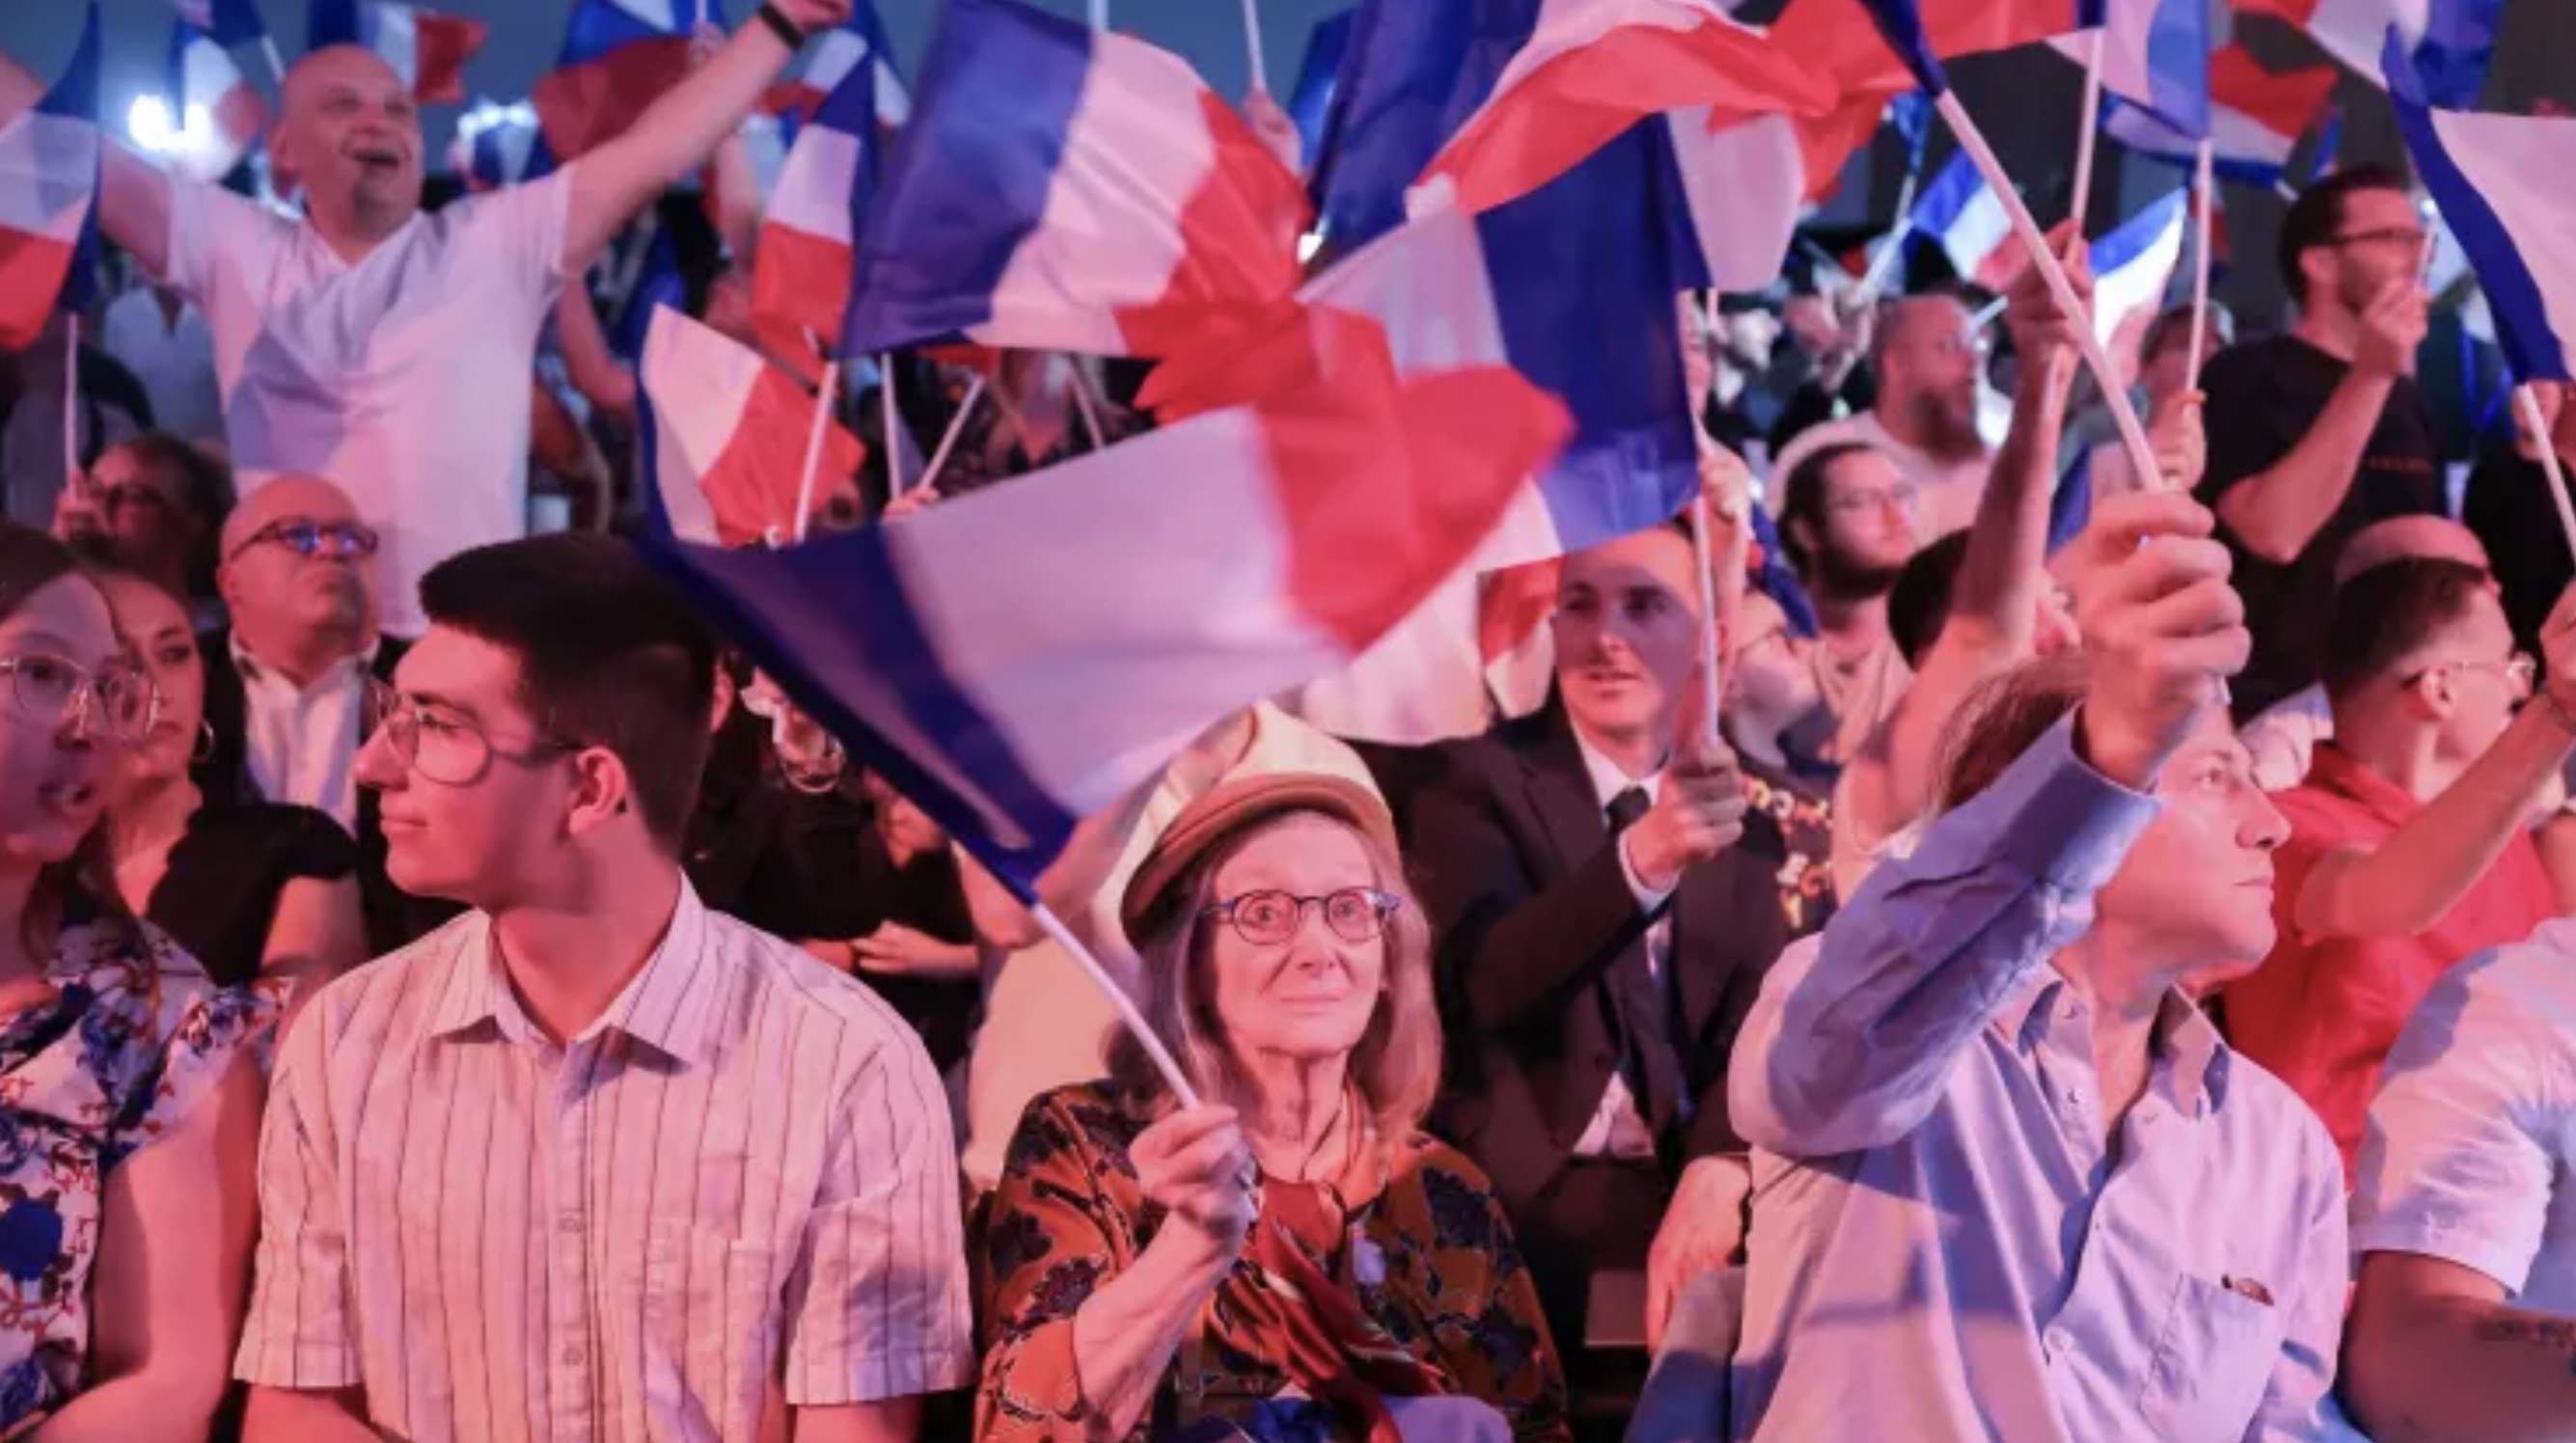 لم يُحسم أمر الأغلبية المطلقة لليمين المتشدد الفرنسي بعد رغم النجاح غير المسبوق في تاريخ حزب التجمع الوطني